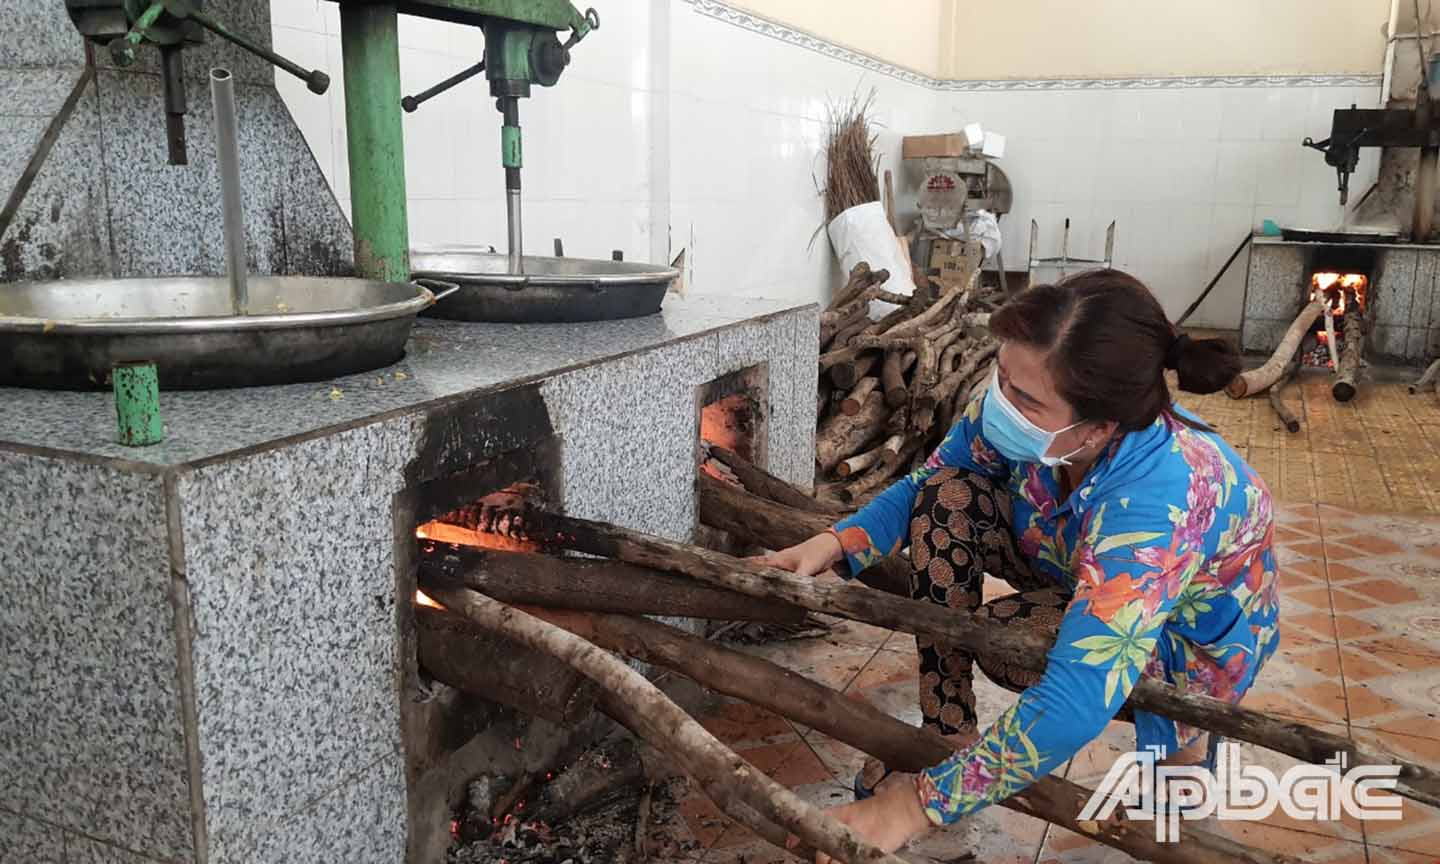 Lò đun được đốt bằng củi tràm Tân Phước cũng góp phần tạo thêm hương vị cho kẹo khóm Tân Phước.